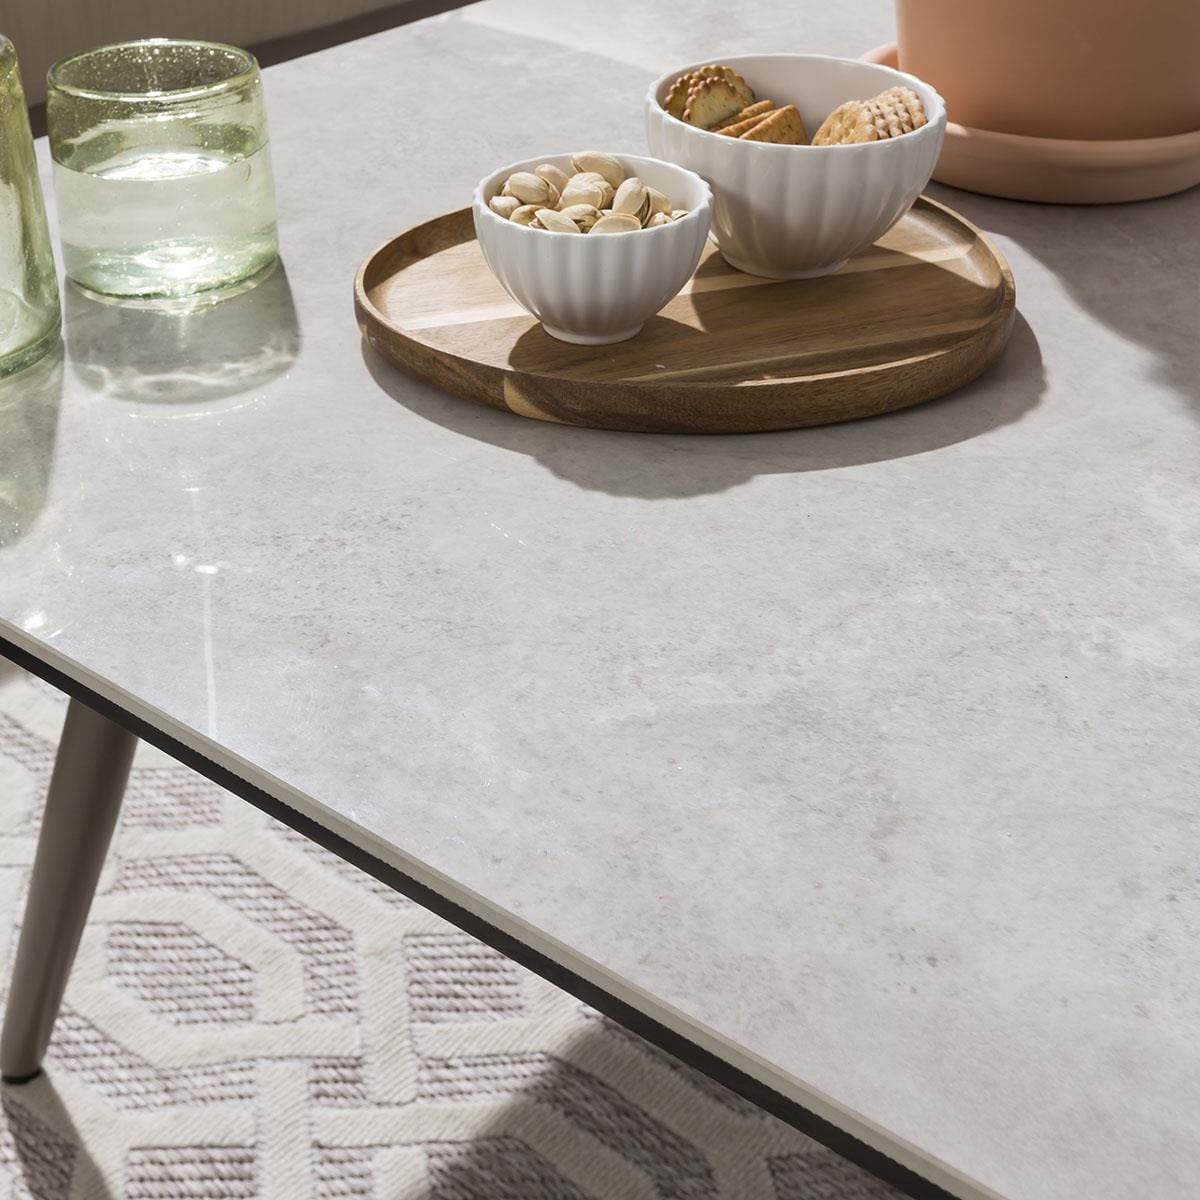 Quatropi Modern Garden Coffee Table | Aluminium & Grey Ceramic Top 90cm × 90cm